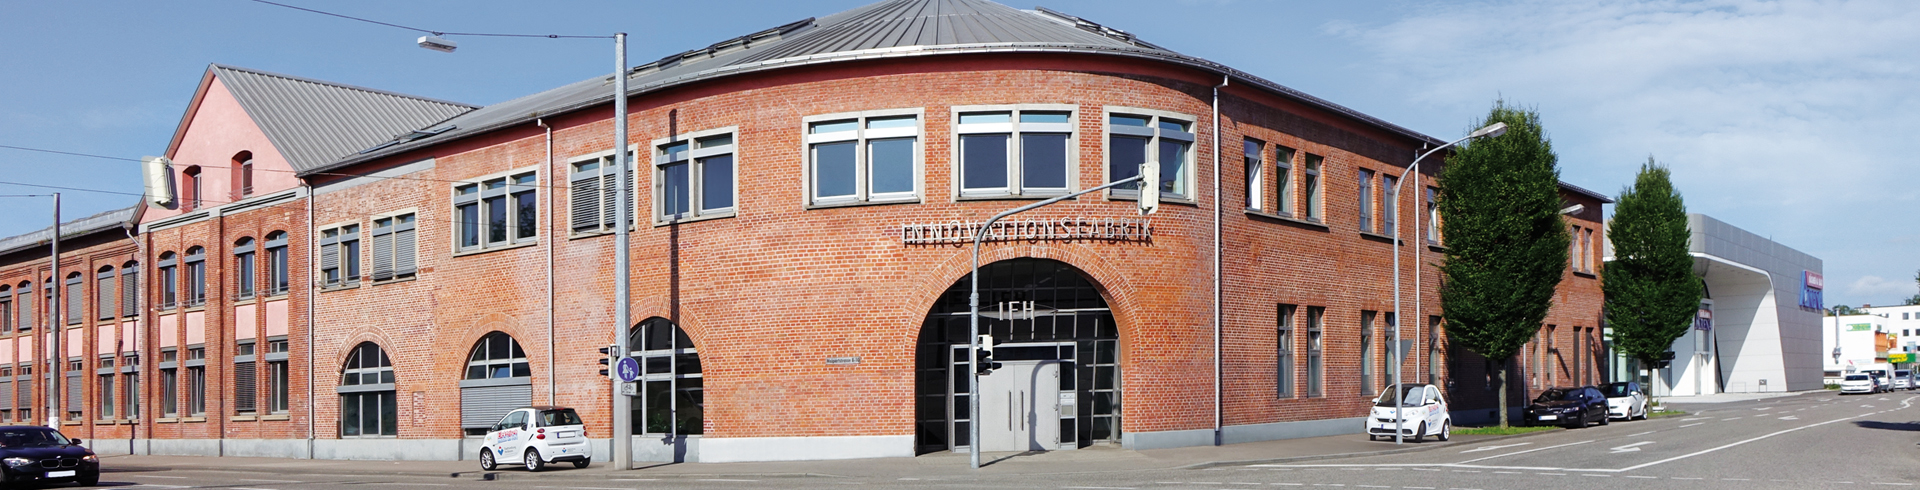 Headermotiv Innovationsfabrik Heilbronn